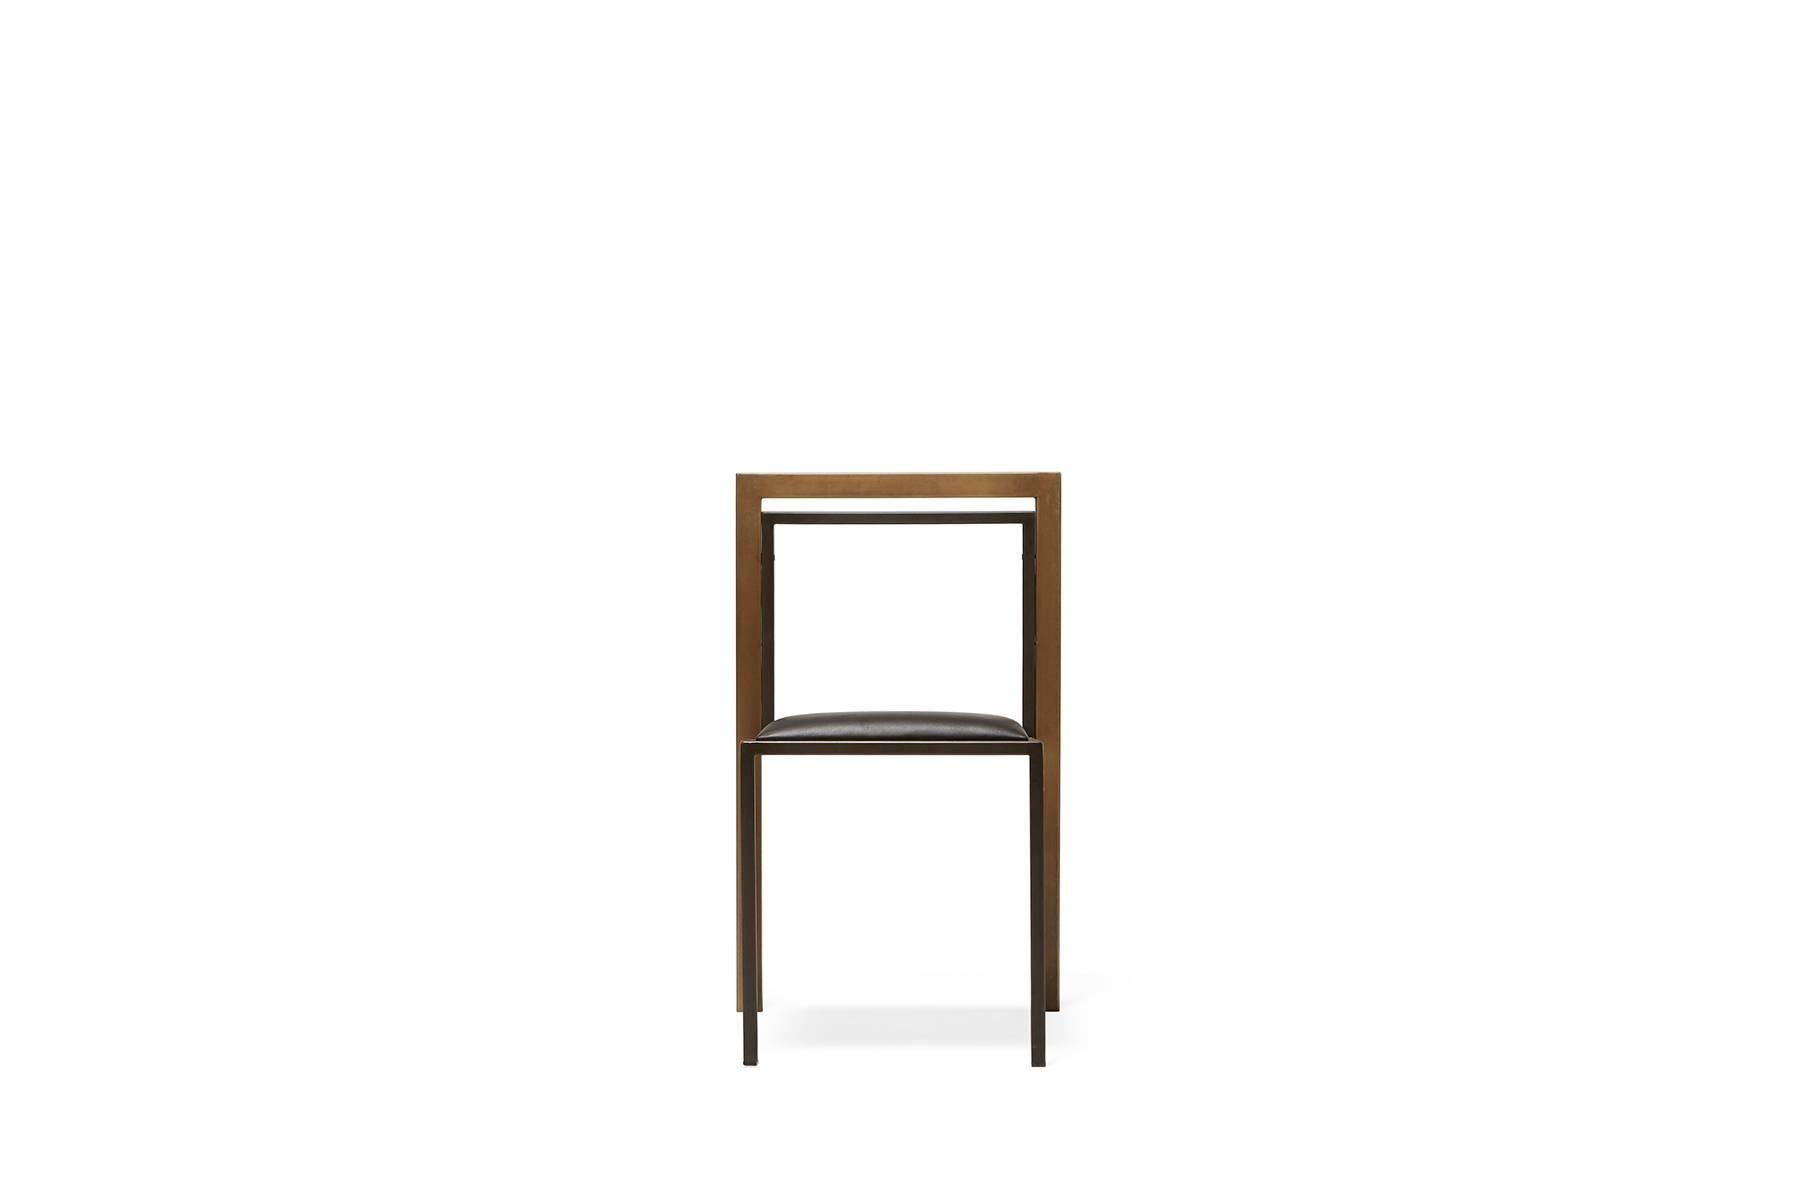 Ein Stahl- und Lederstuhl mit bequemem Sitz, der bei Bedarf platzsparend gestapelt werden kann. Diese Version hat ein Gestell aus geschwärztem Stahl, eine Rückenlehne aus Messing und einen gepolsterten Sitz aus schwarzem Leder. Zu dieser Kollektion